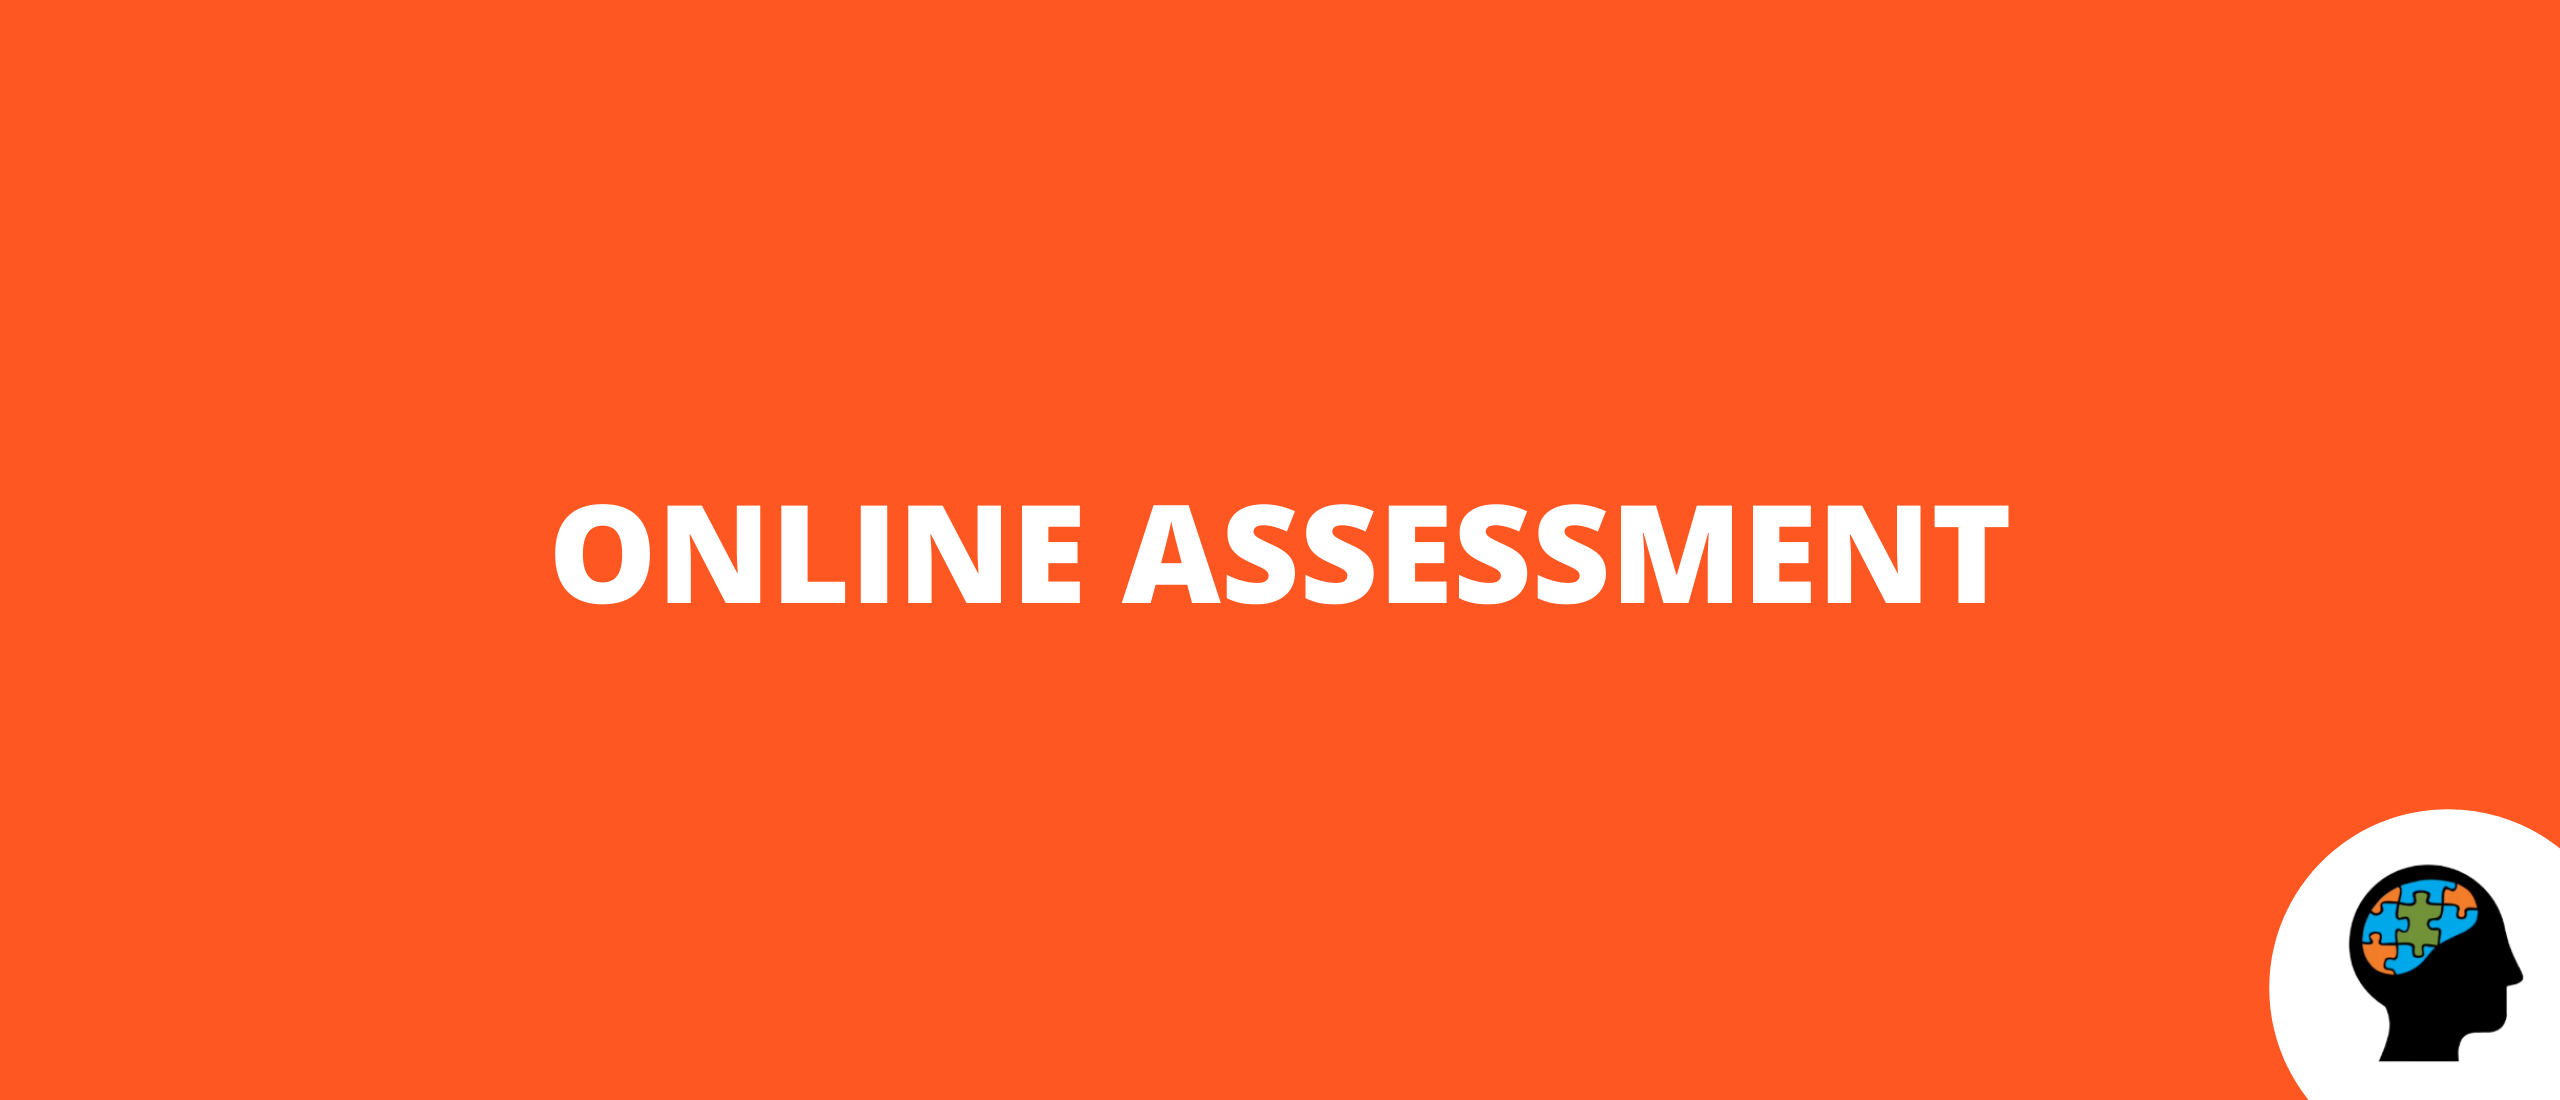 Online assessment